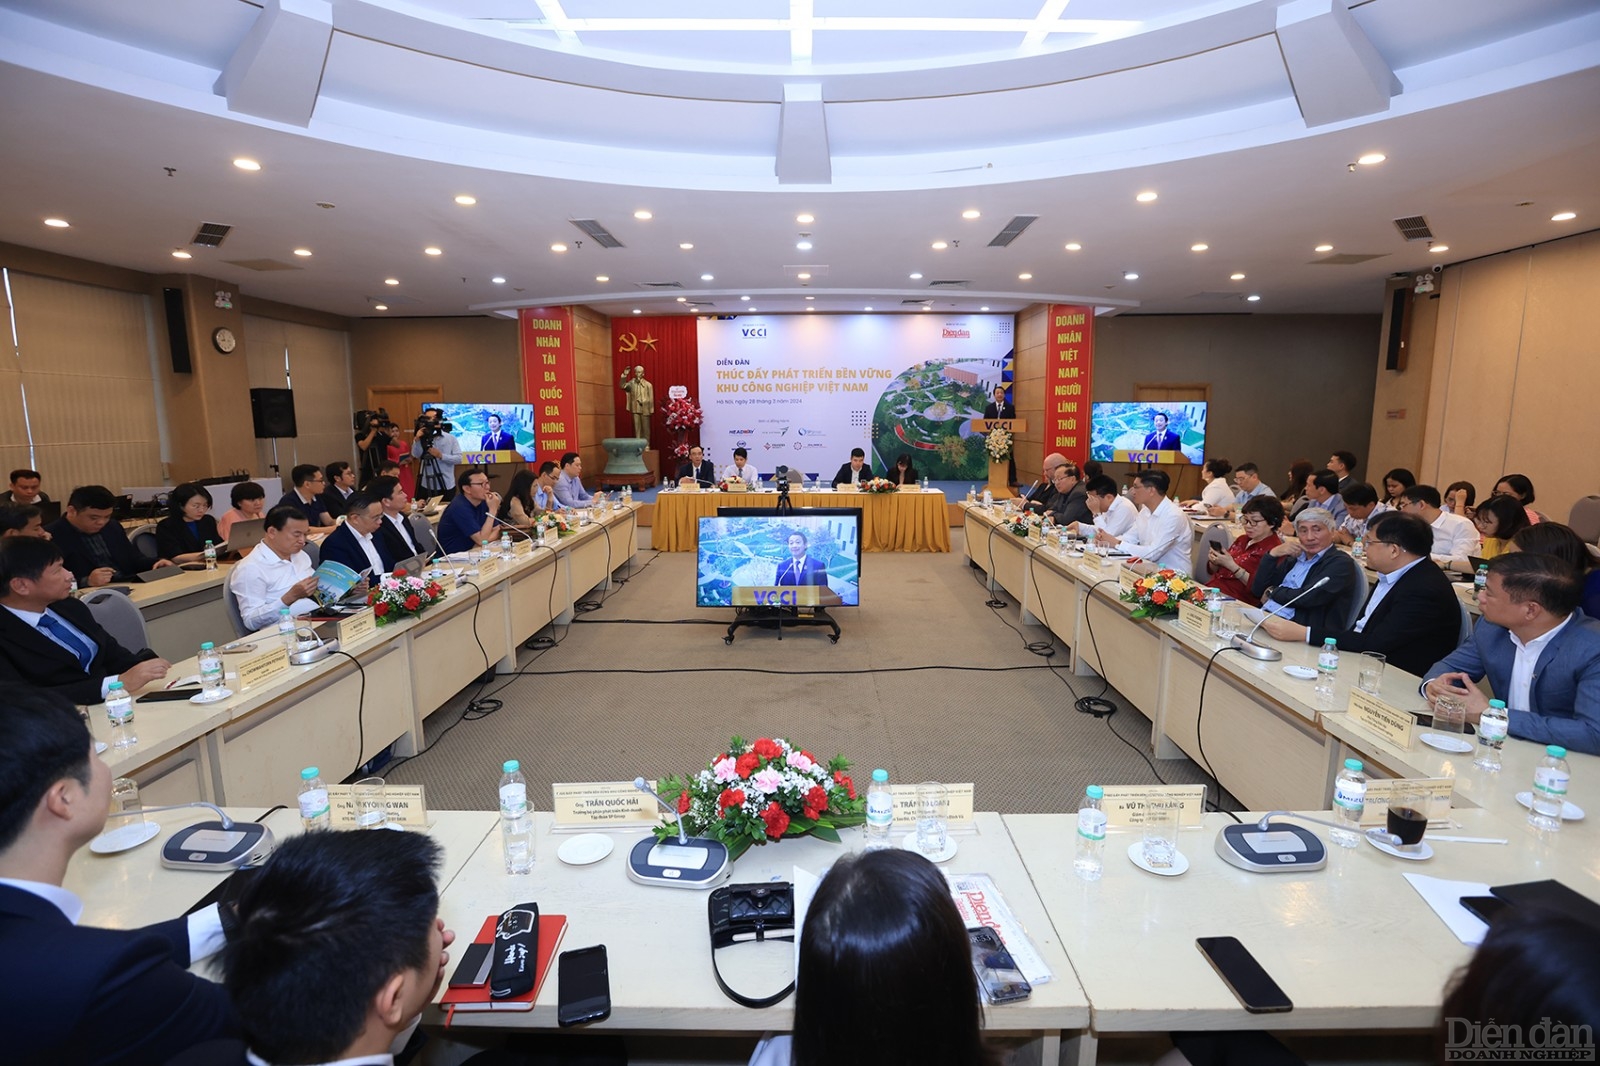 Diễn đàn “Thúc đẩy phát triển bền vững Khu công nghiệp Việt Nam” do Tạp chí Diễn đàn Doanh nghiệp tổ chức ngày 28/3 tại Hà Nội.